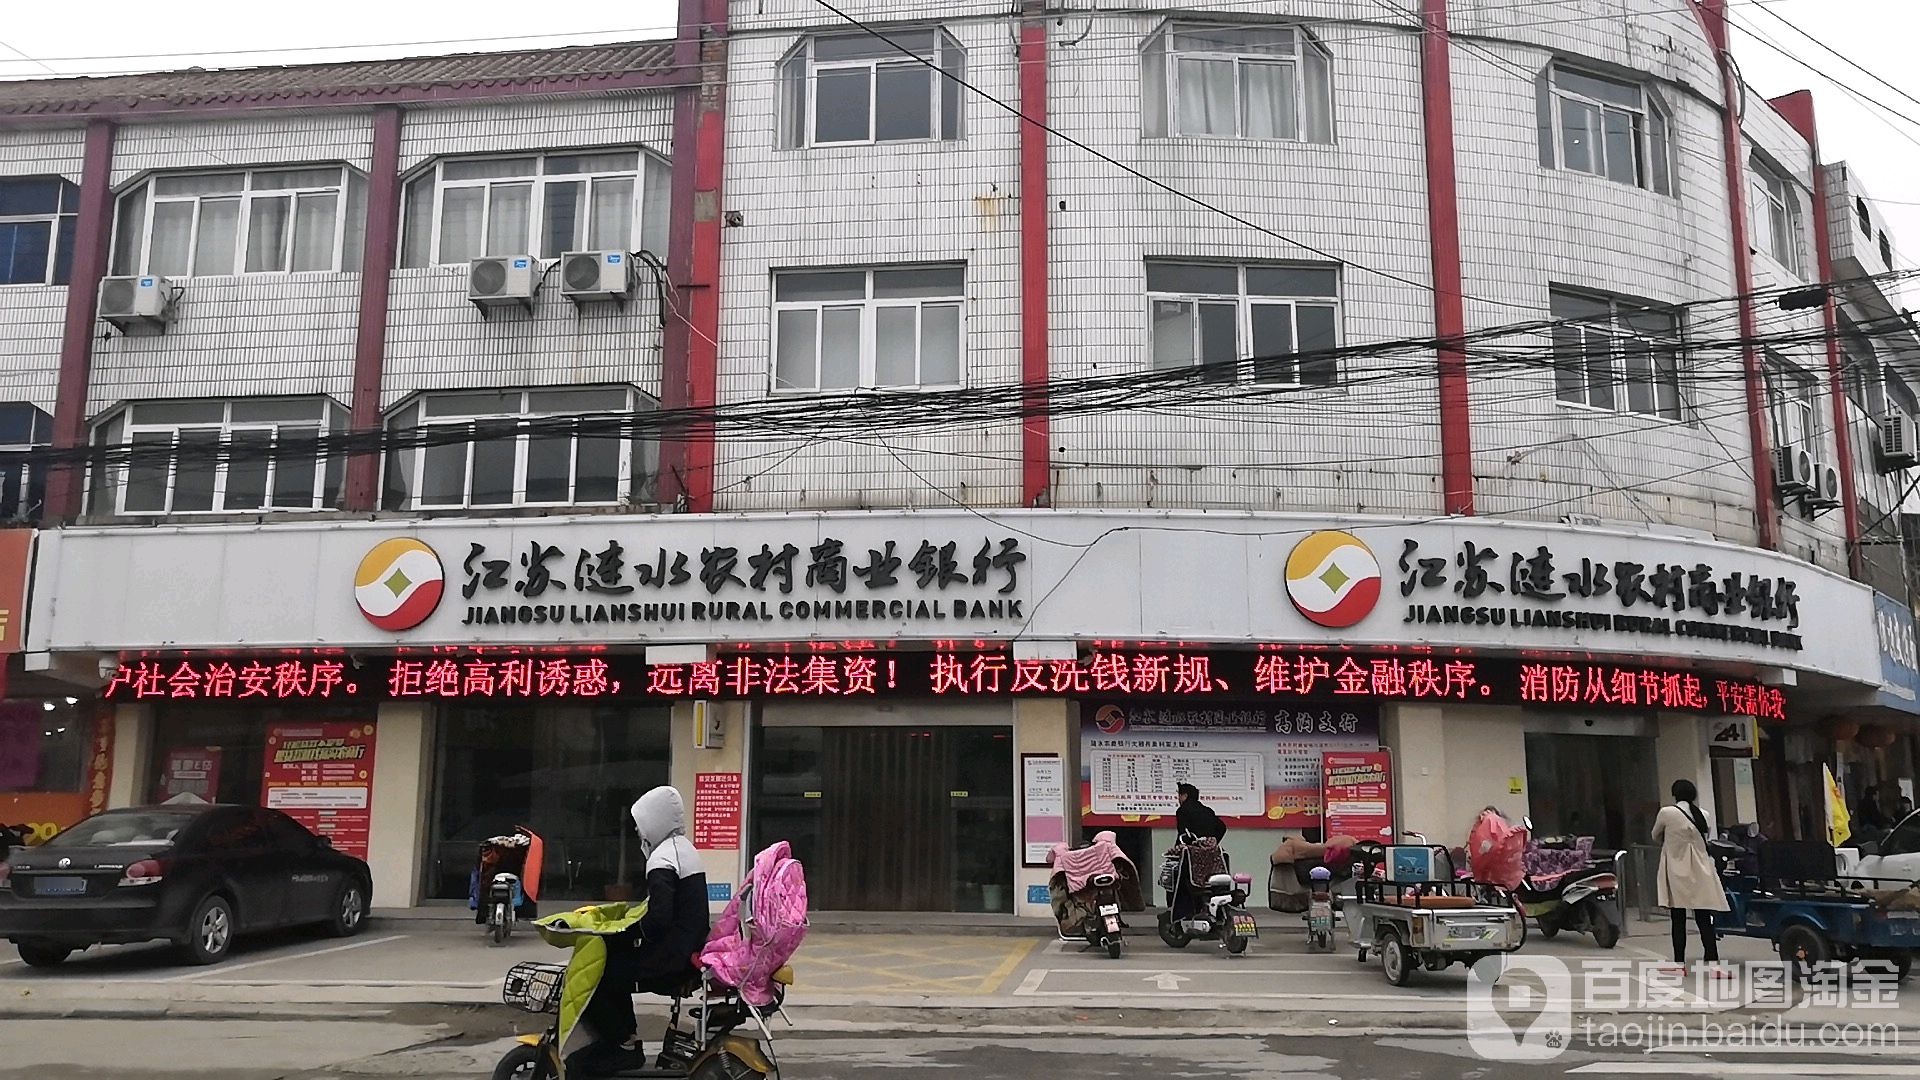 江苏涟水农村商业银行(高沟支行)